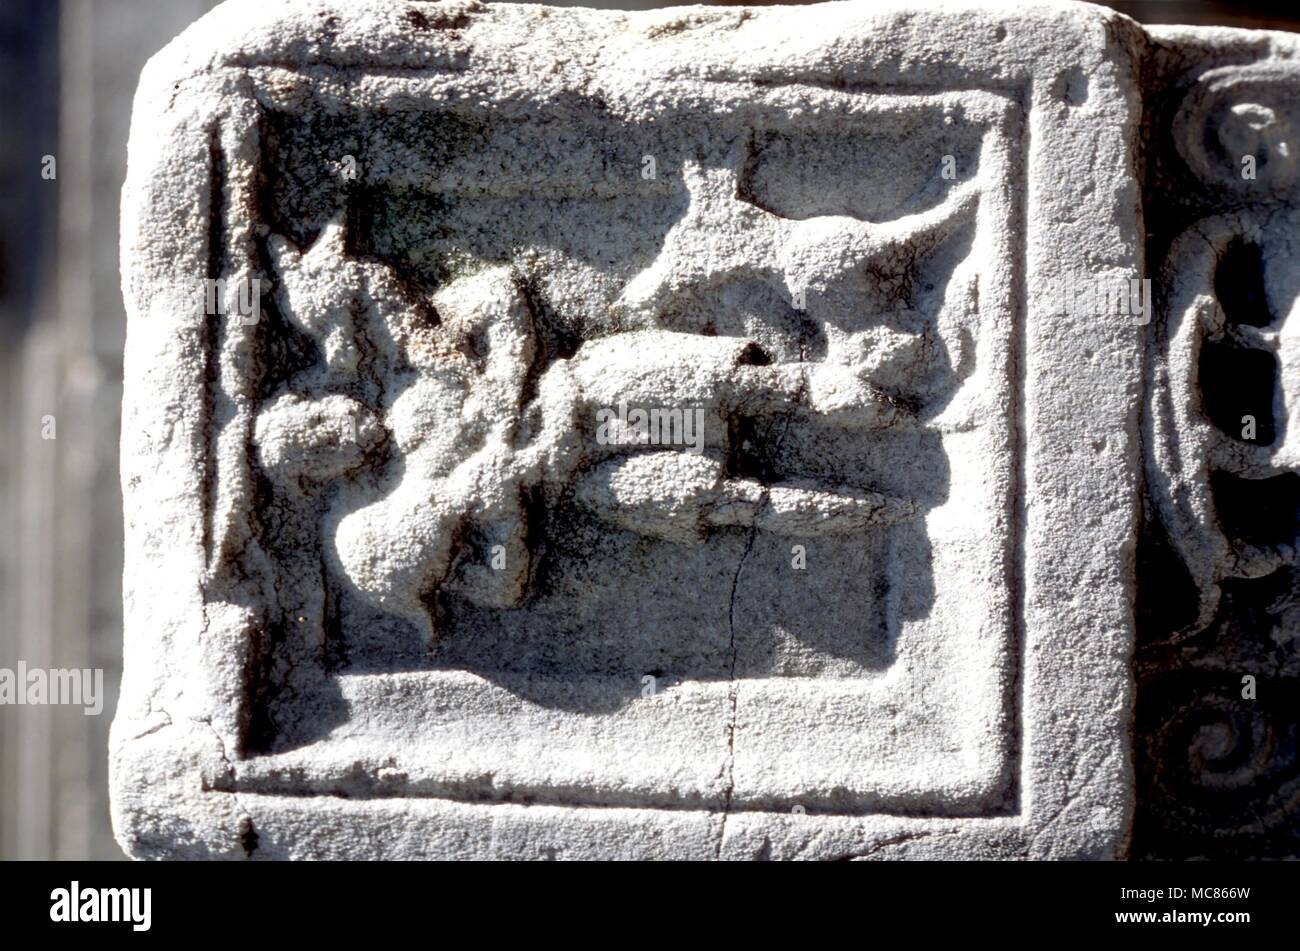 CHRISTIAN frühe christliche Symbol für Christus als den Träger des Lamm, ein Bild von der abgeleitet - Christliche Symbolik. In den Gärten der Hagia Sophia, Istanbul Stockfoto